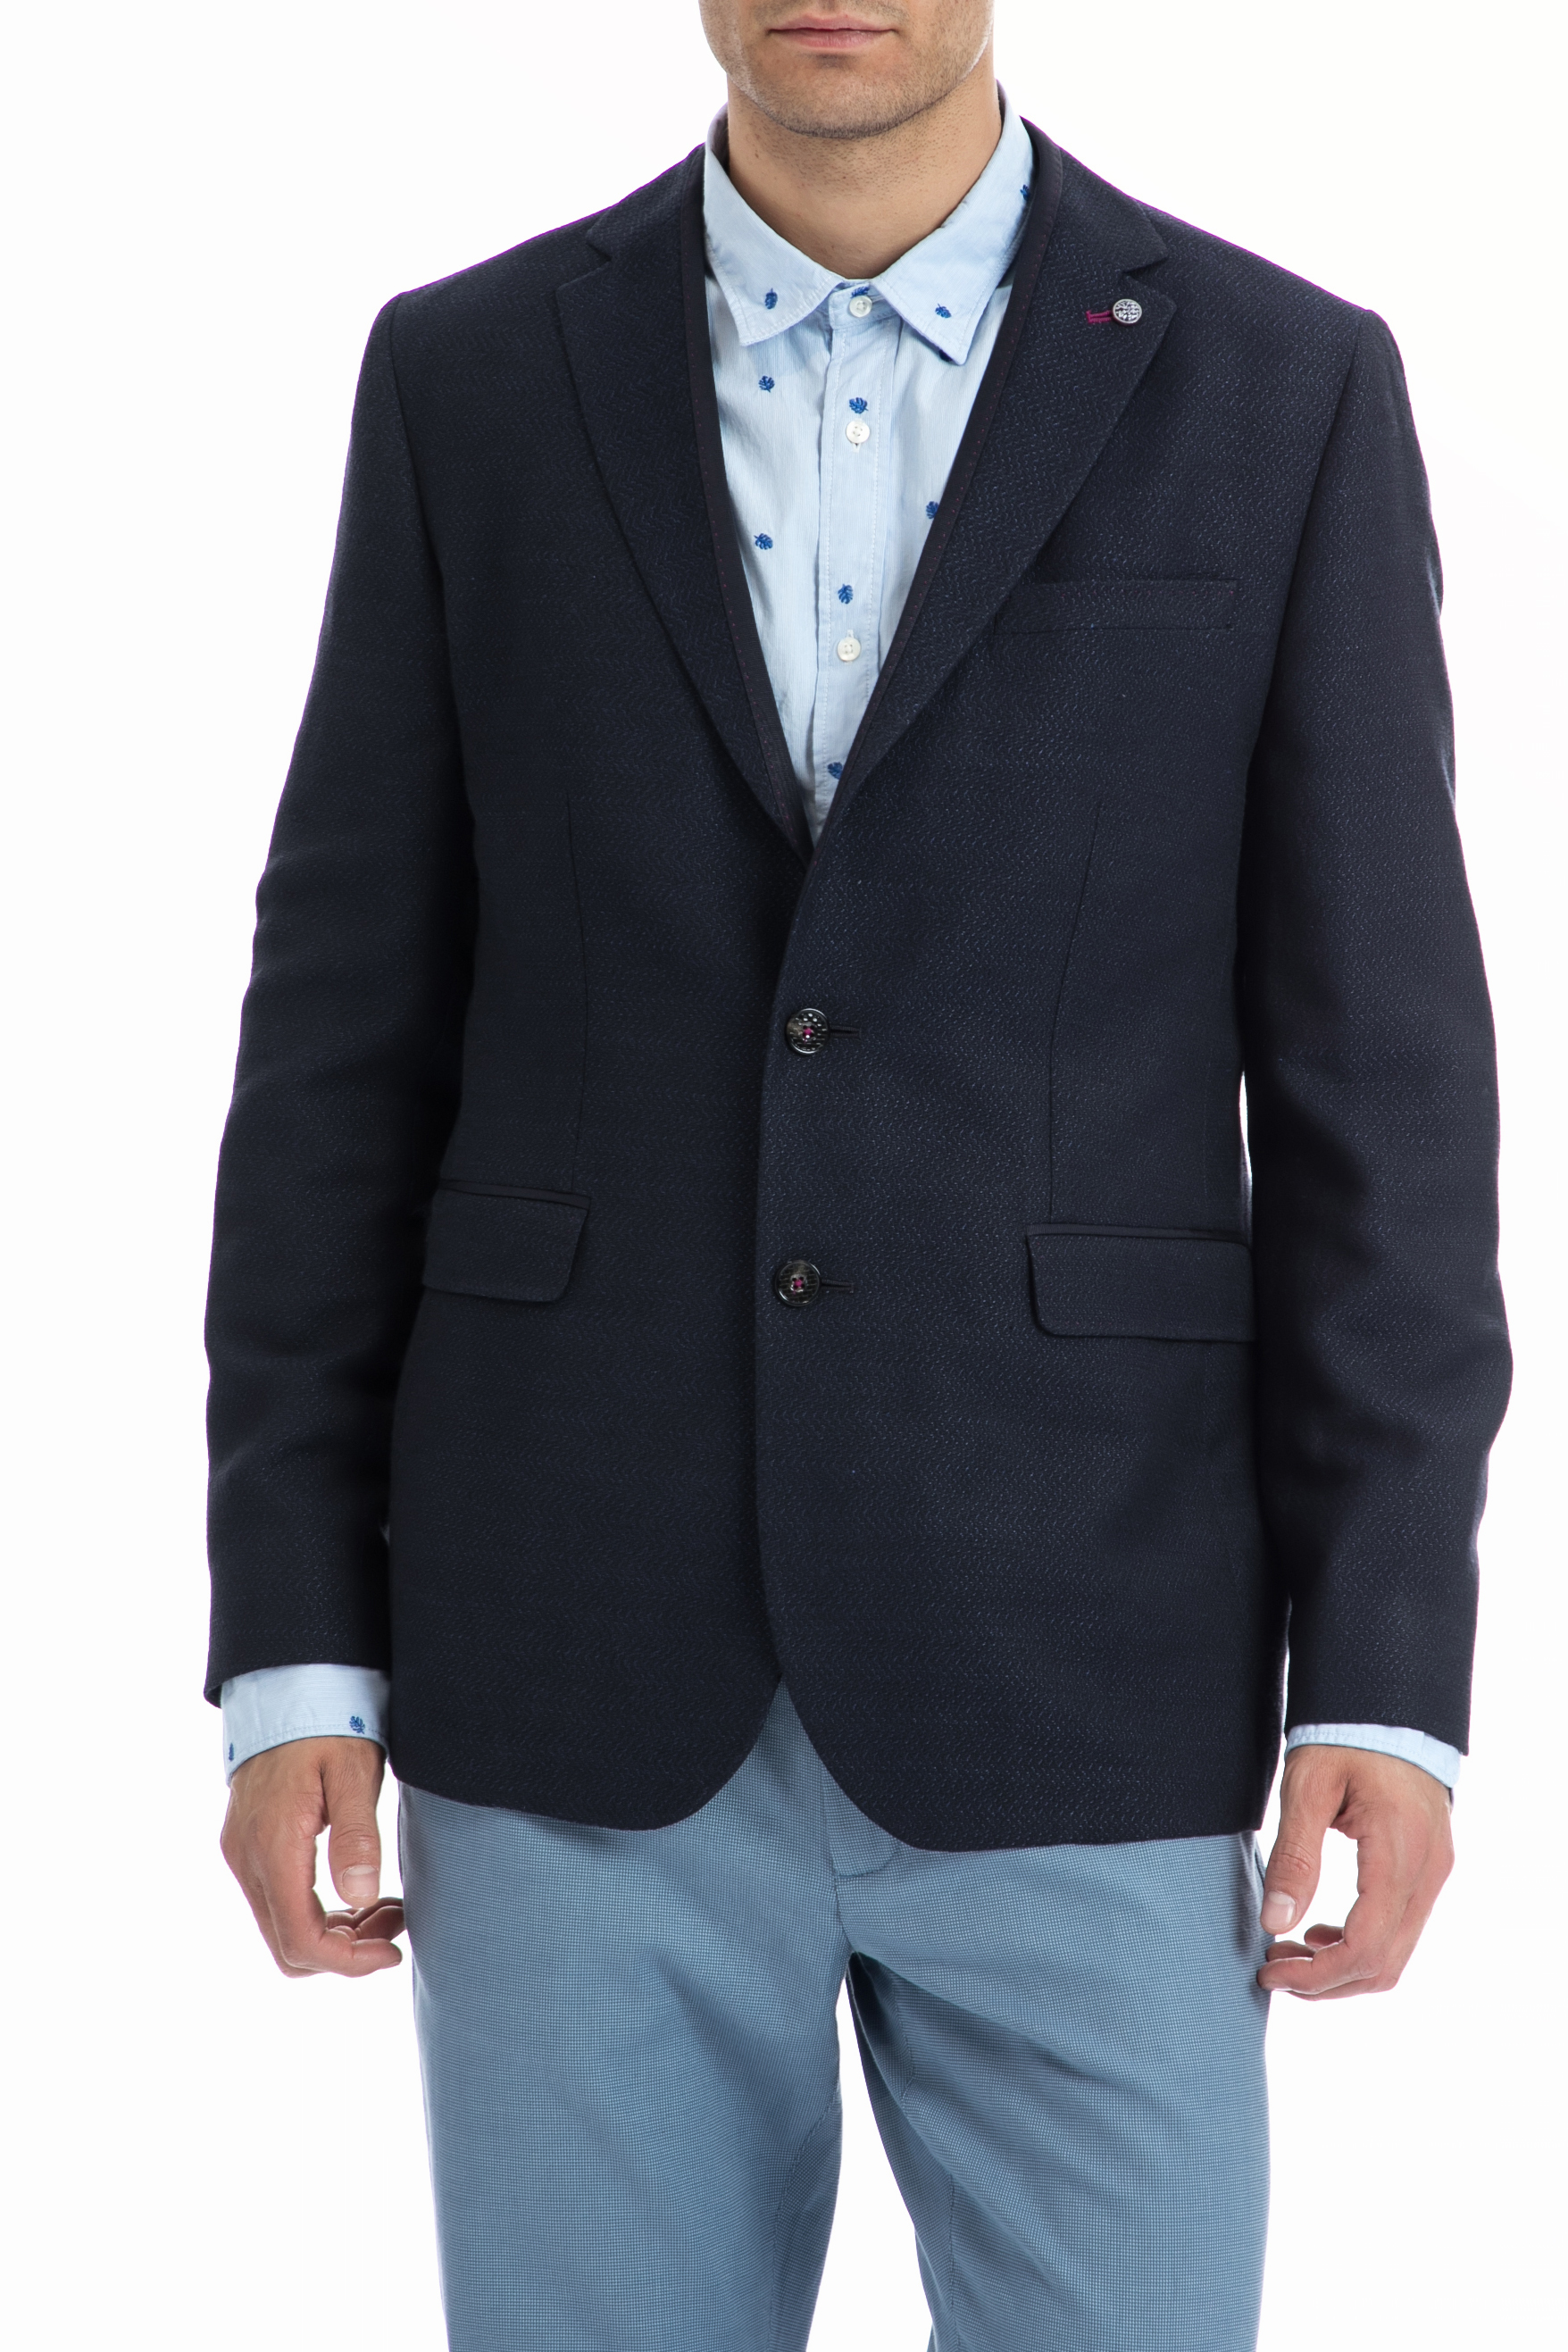 Ανδρικά/Ρούχα/Πανωφόρια/Σακάκια TED BAKER - Ανδρικό σακάκι TED BAKER μπλε